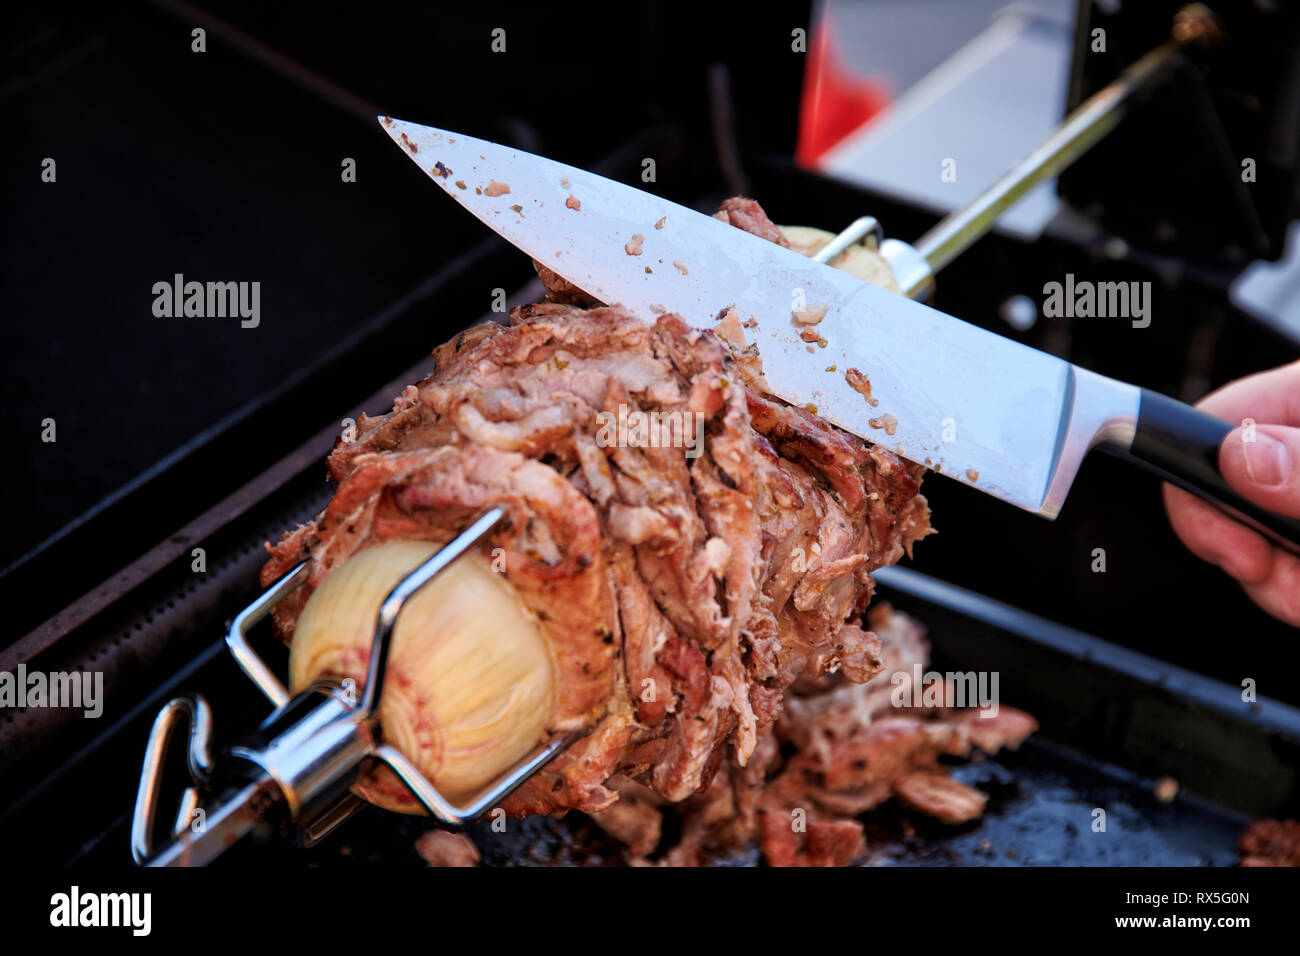 Von einem selbstgemachten Doenerspiess der in einem Grill eingespannt ist, wird Mit einem grossen Messer eine porzione abgeschnitten. Foto Stock